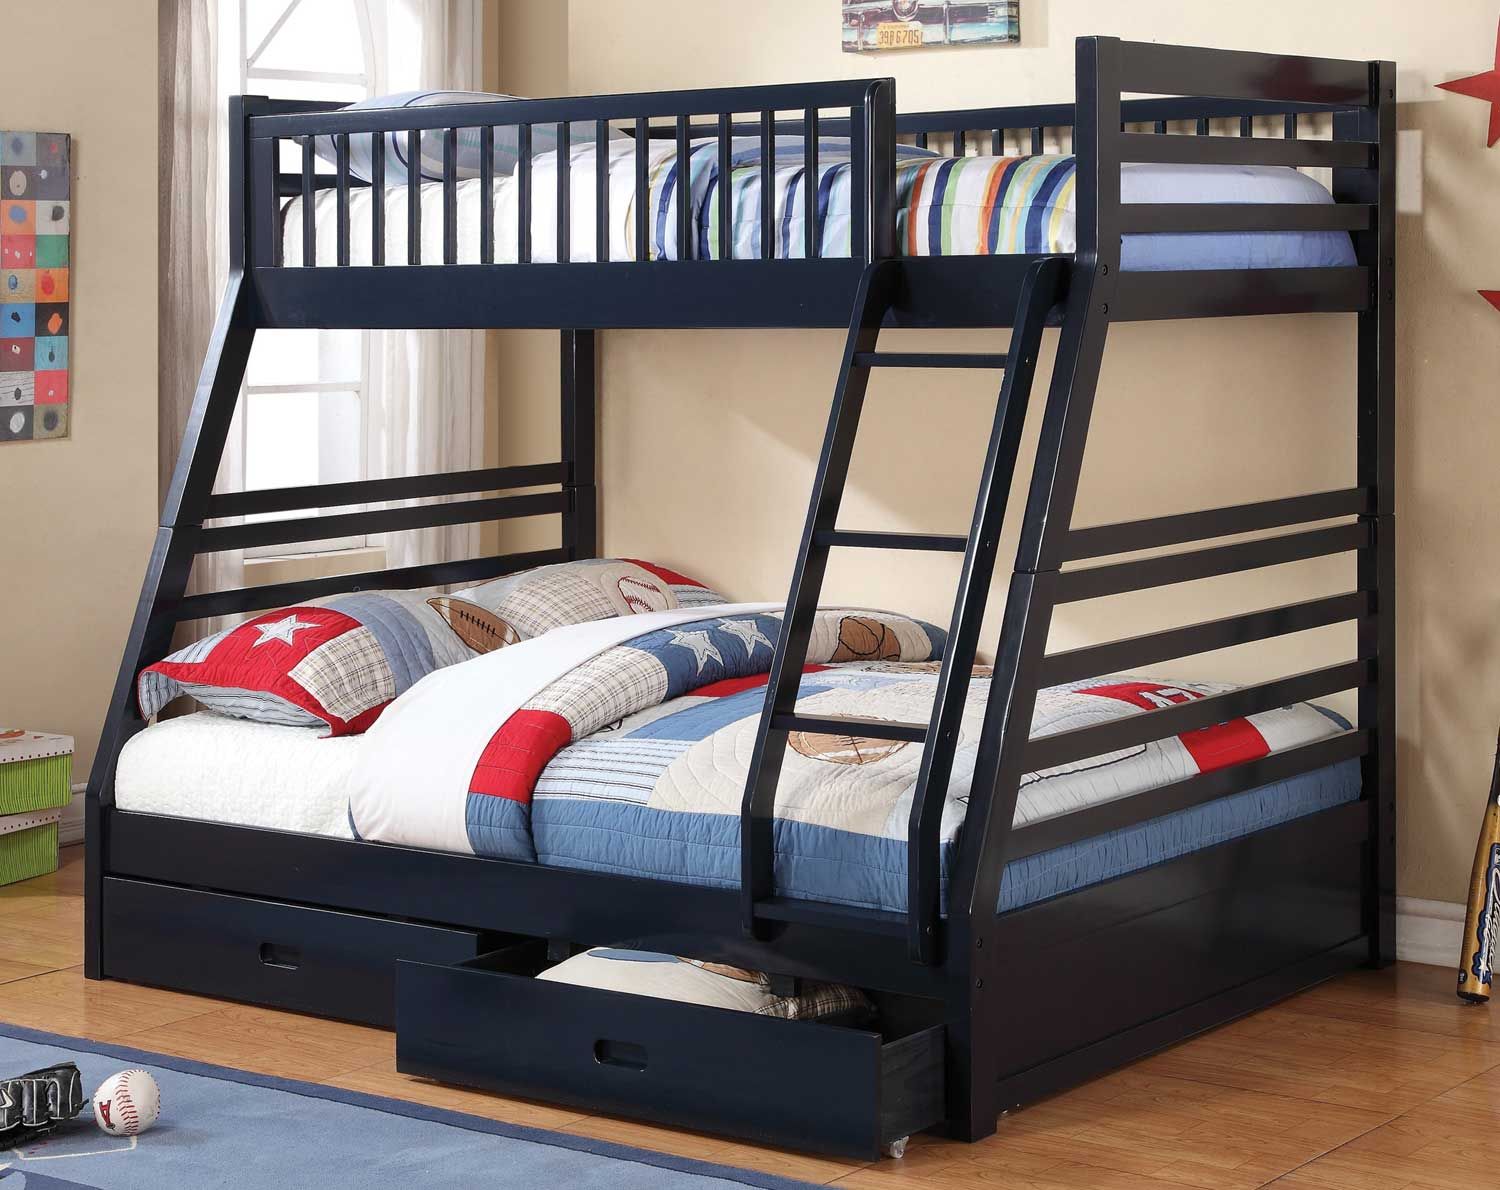 двухъярусная кровать для взрослого ребенка